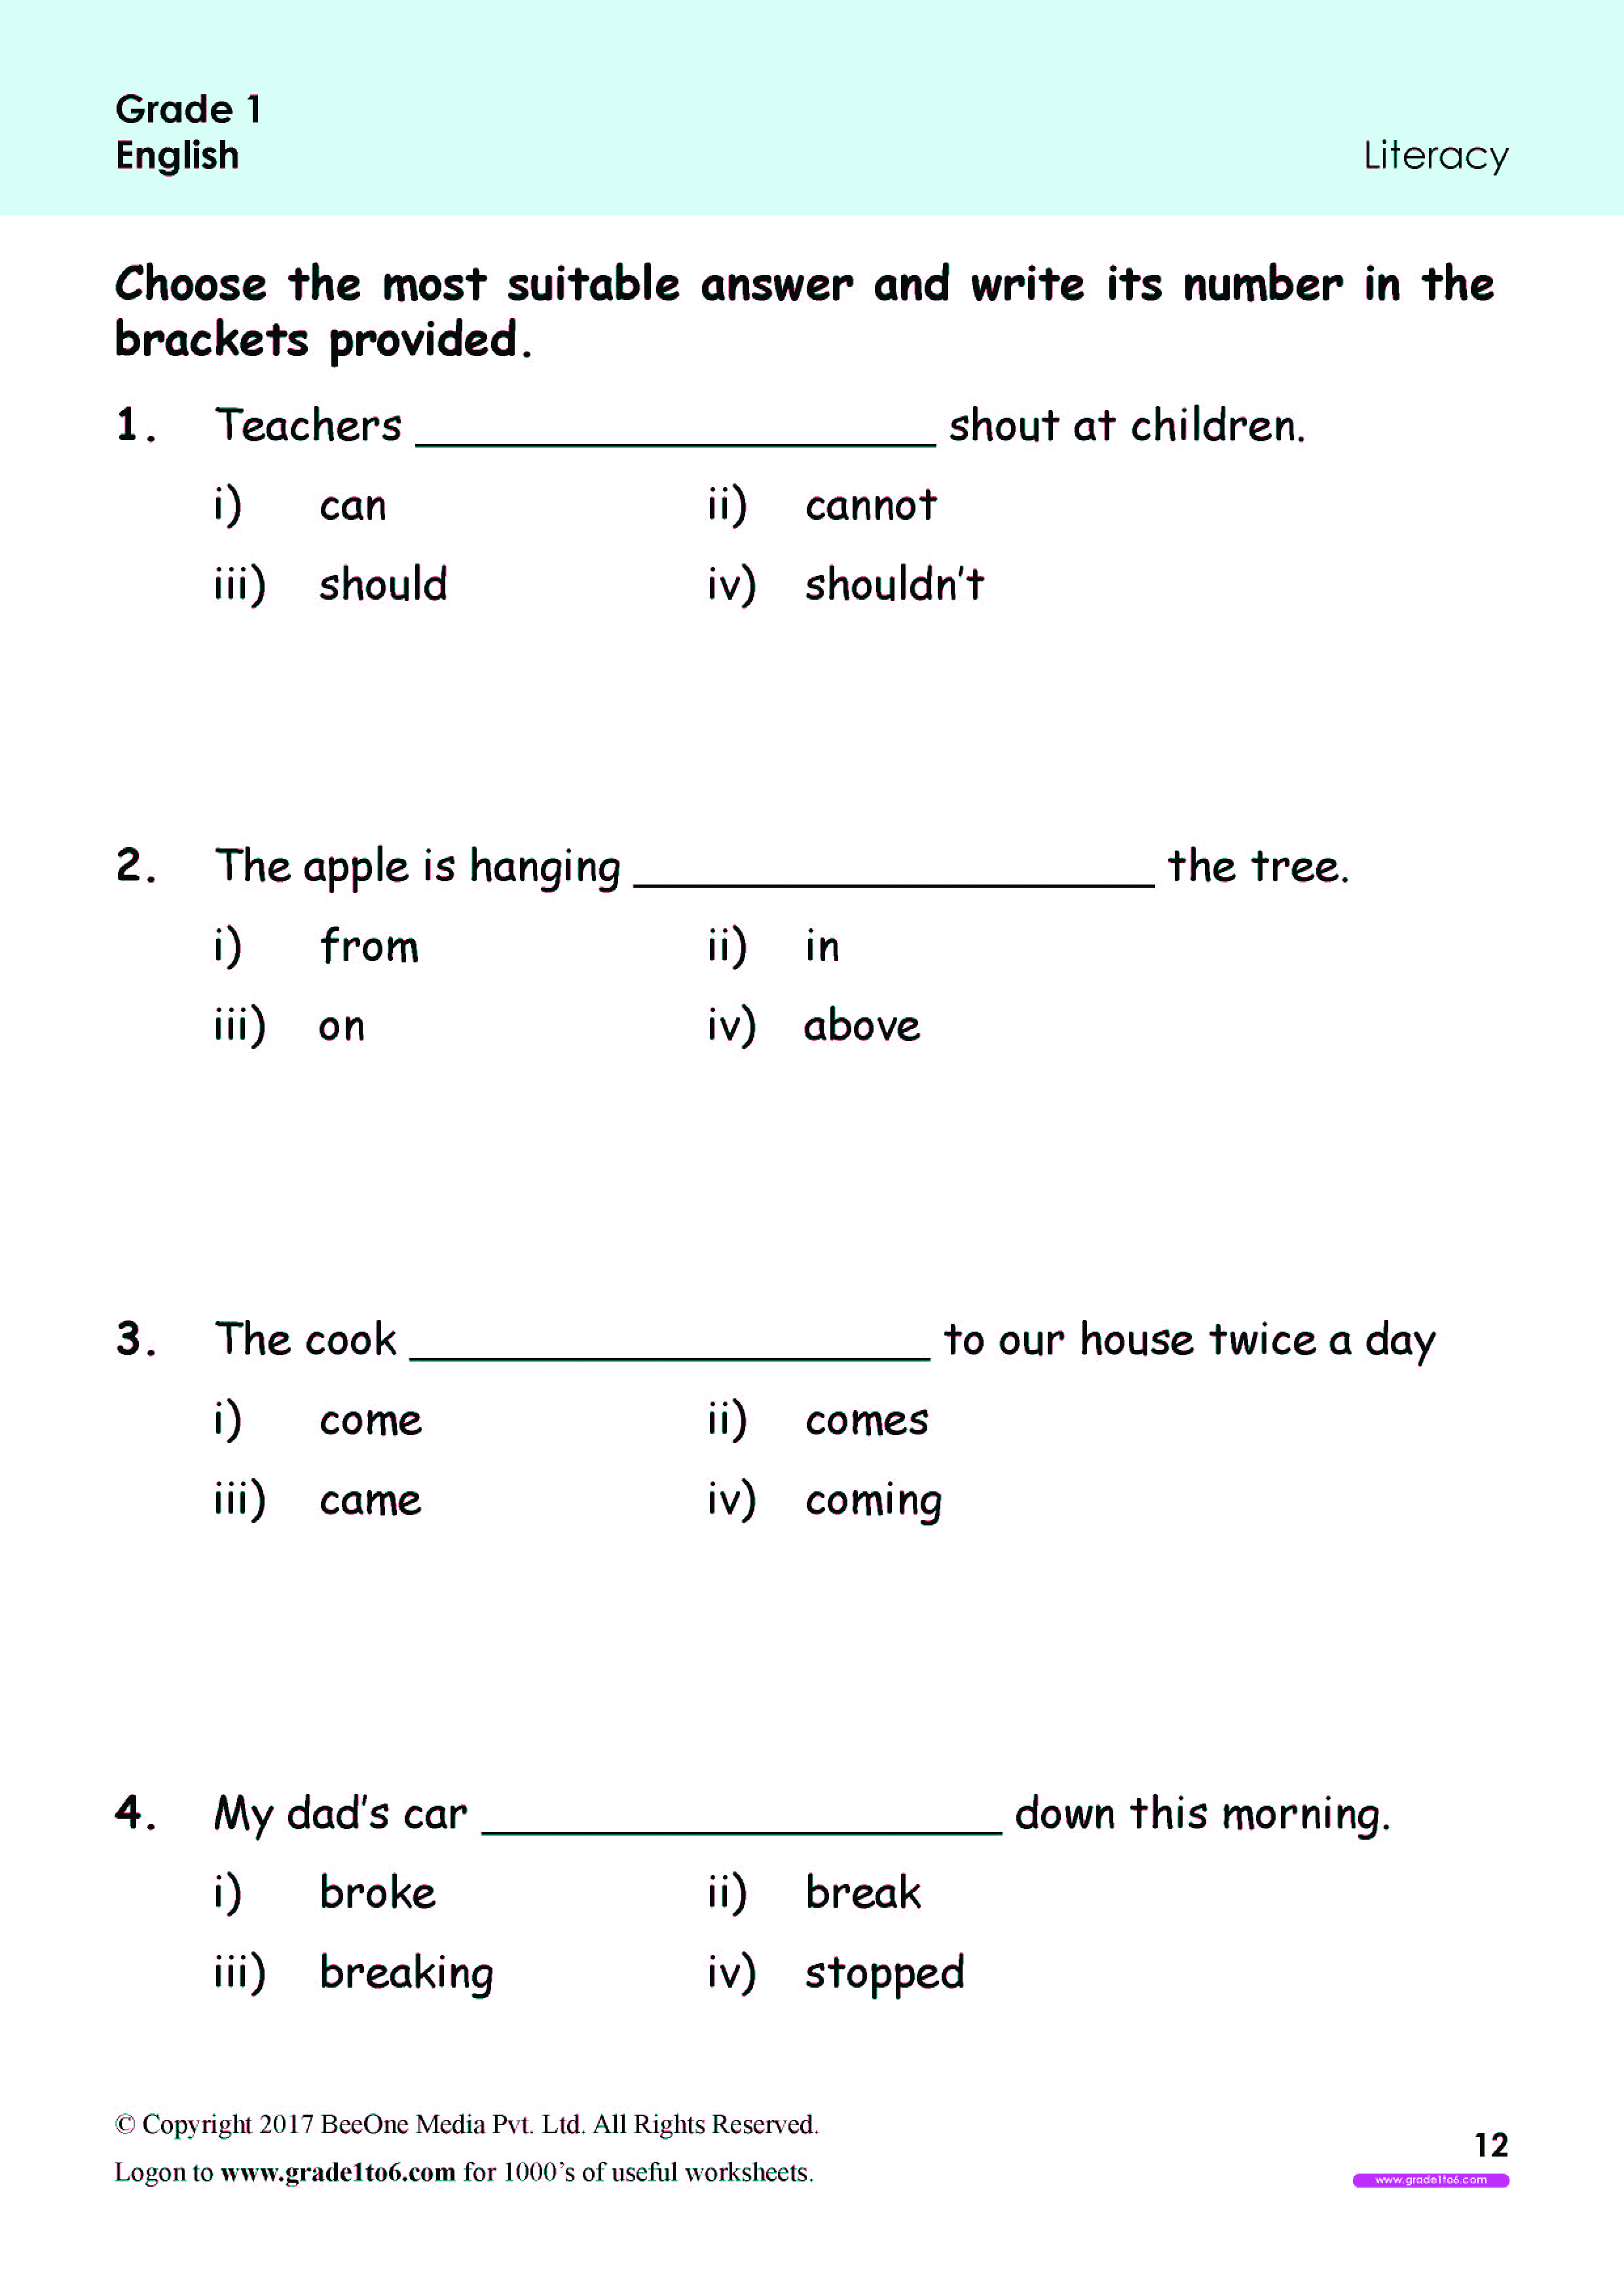 english-grade-1-worksheets-free-printable-worksheet